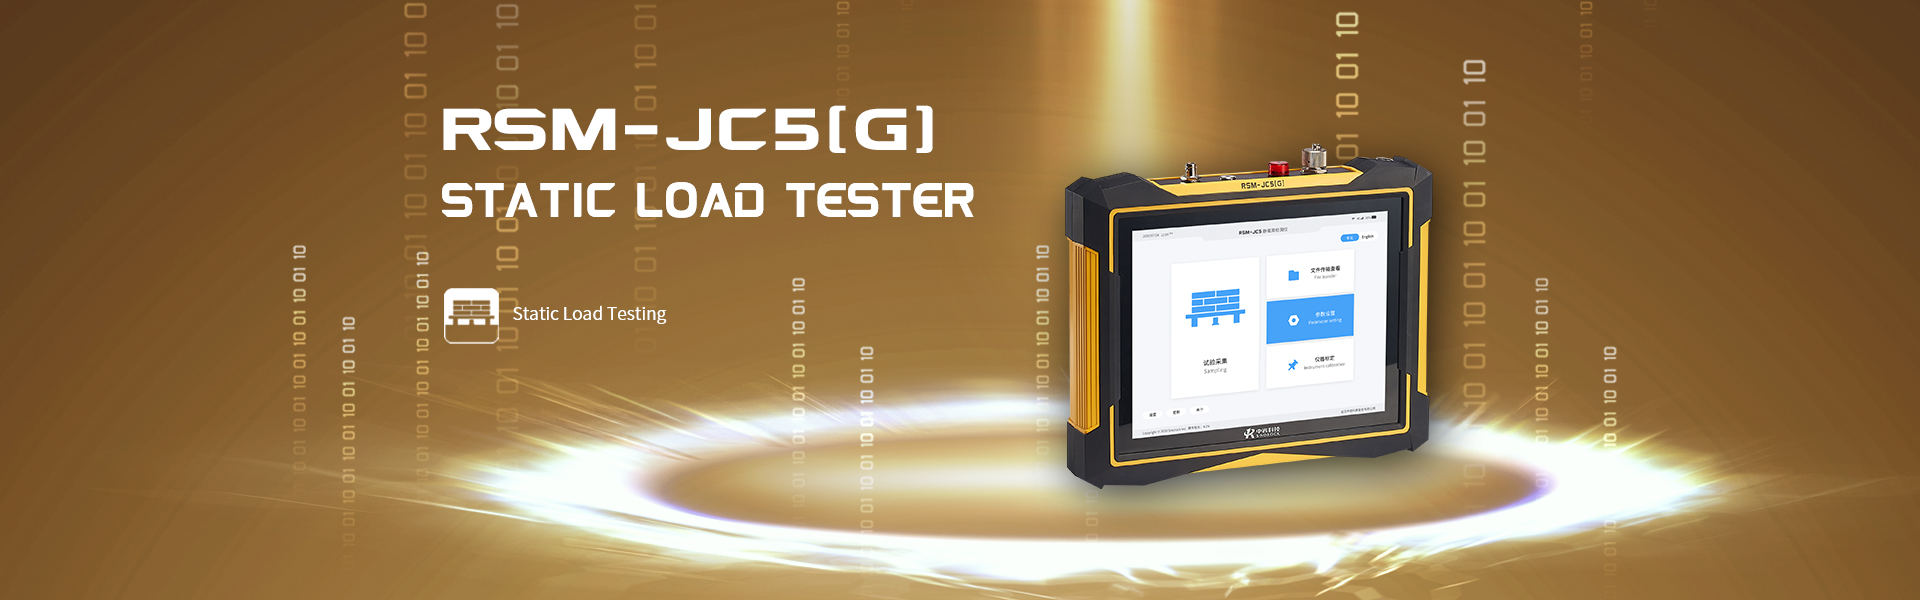 RSM-JC5 (G) static load tester